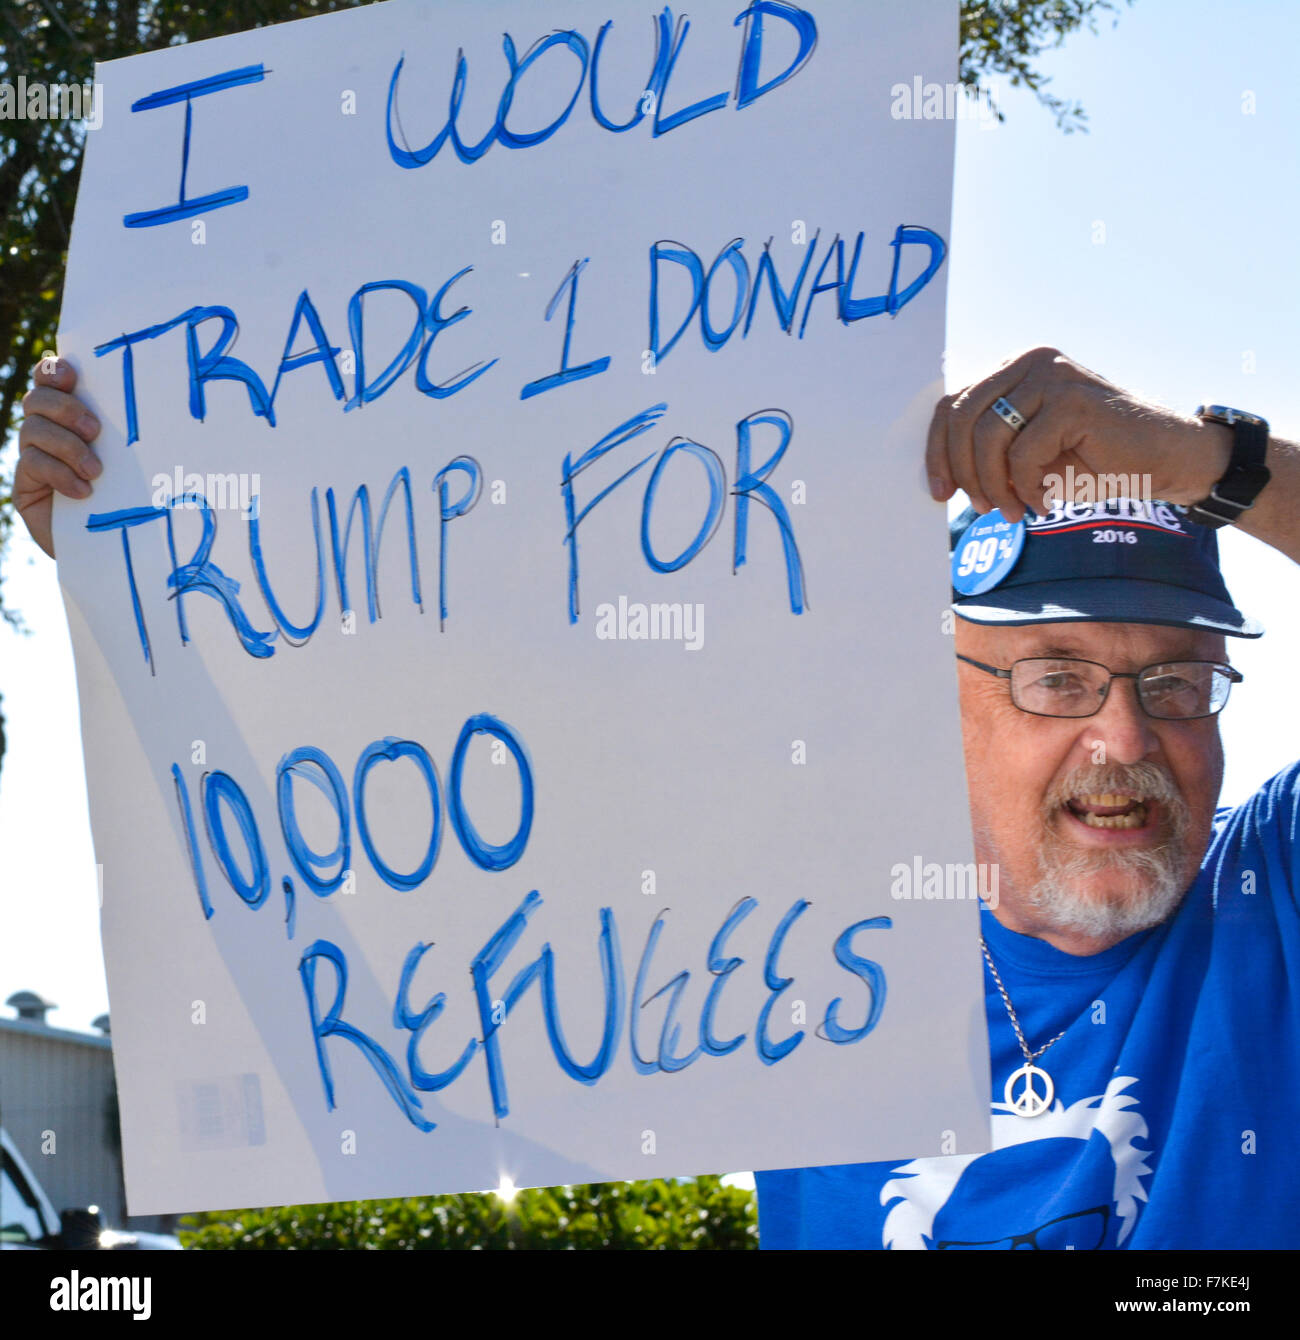 Un homme portant un chapeau Bernie Sanders est titulaire d'un signe de protestation concernant la position de Donald Trump sur les réfugiés syriens à un rallye GOP Banque D'Images